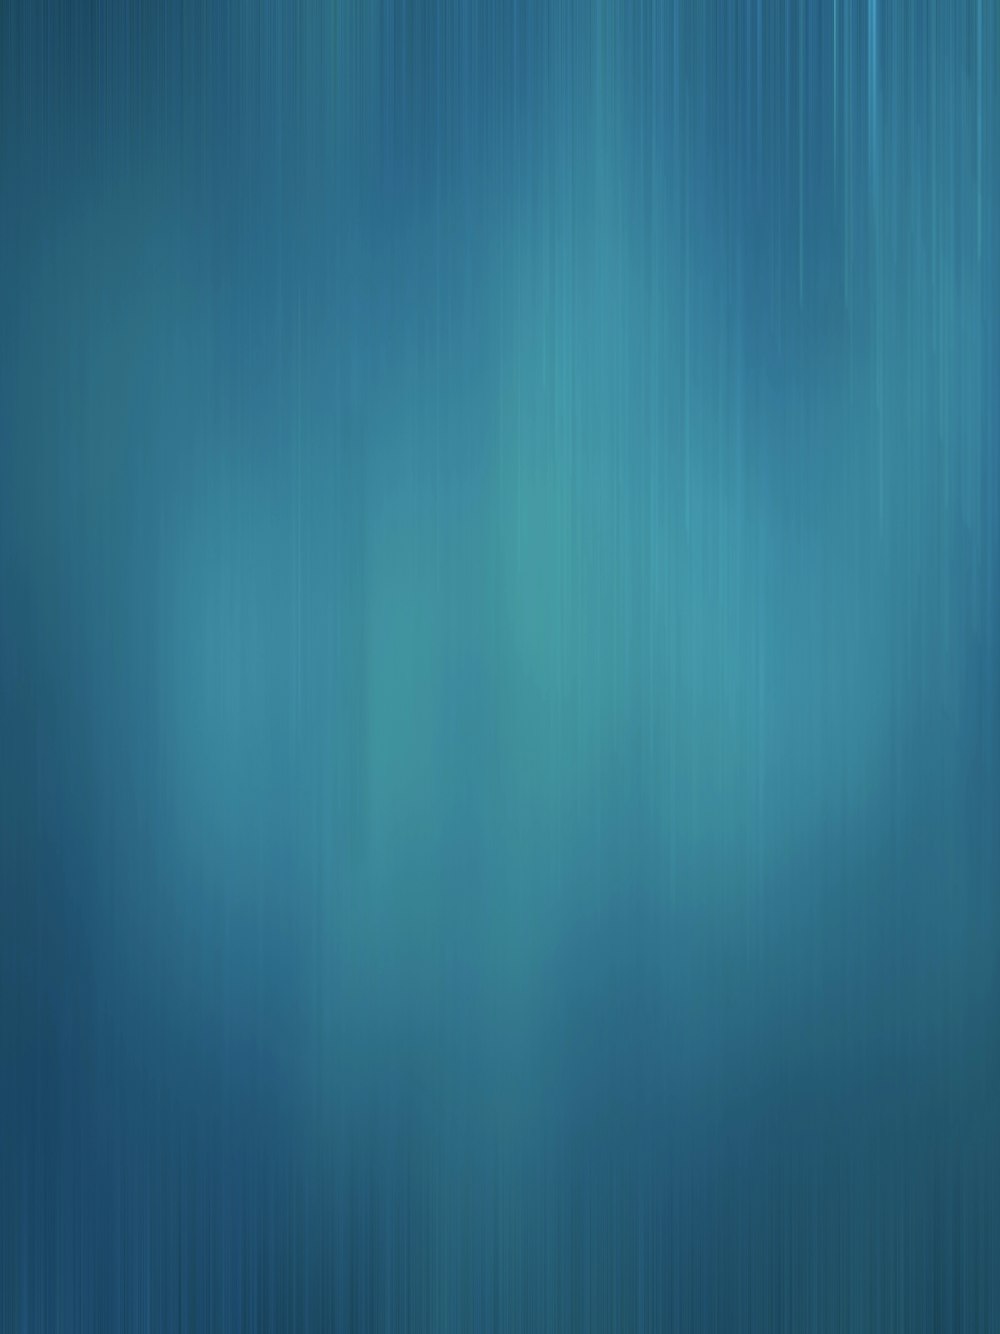 un fondo azul borroso con líneas horizontales